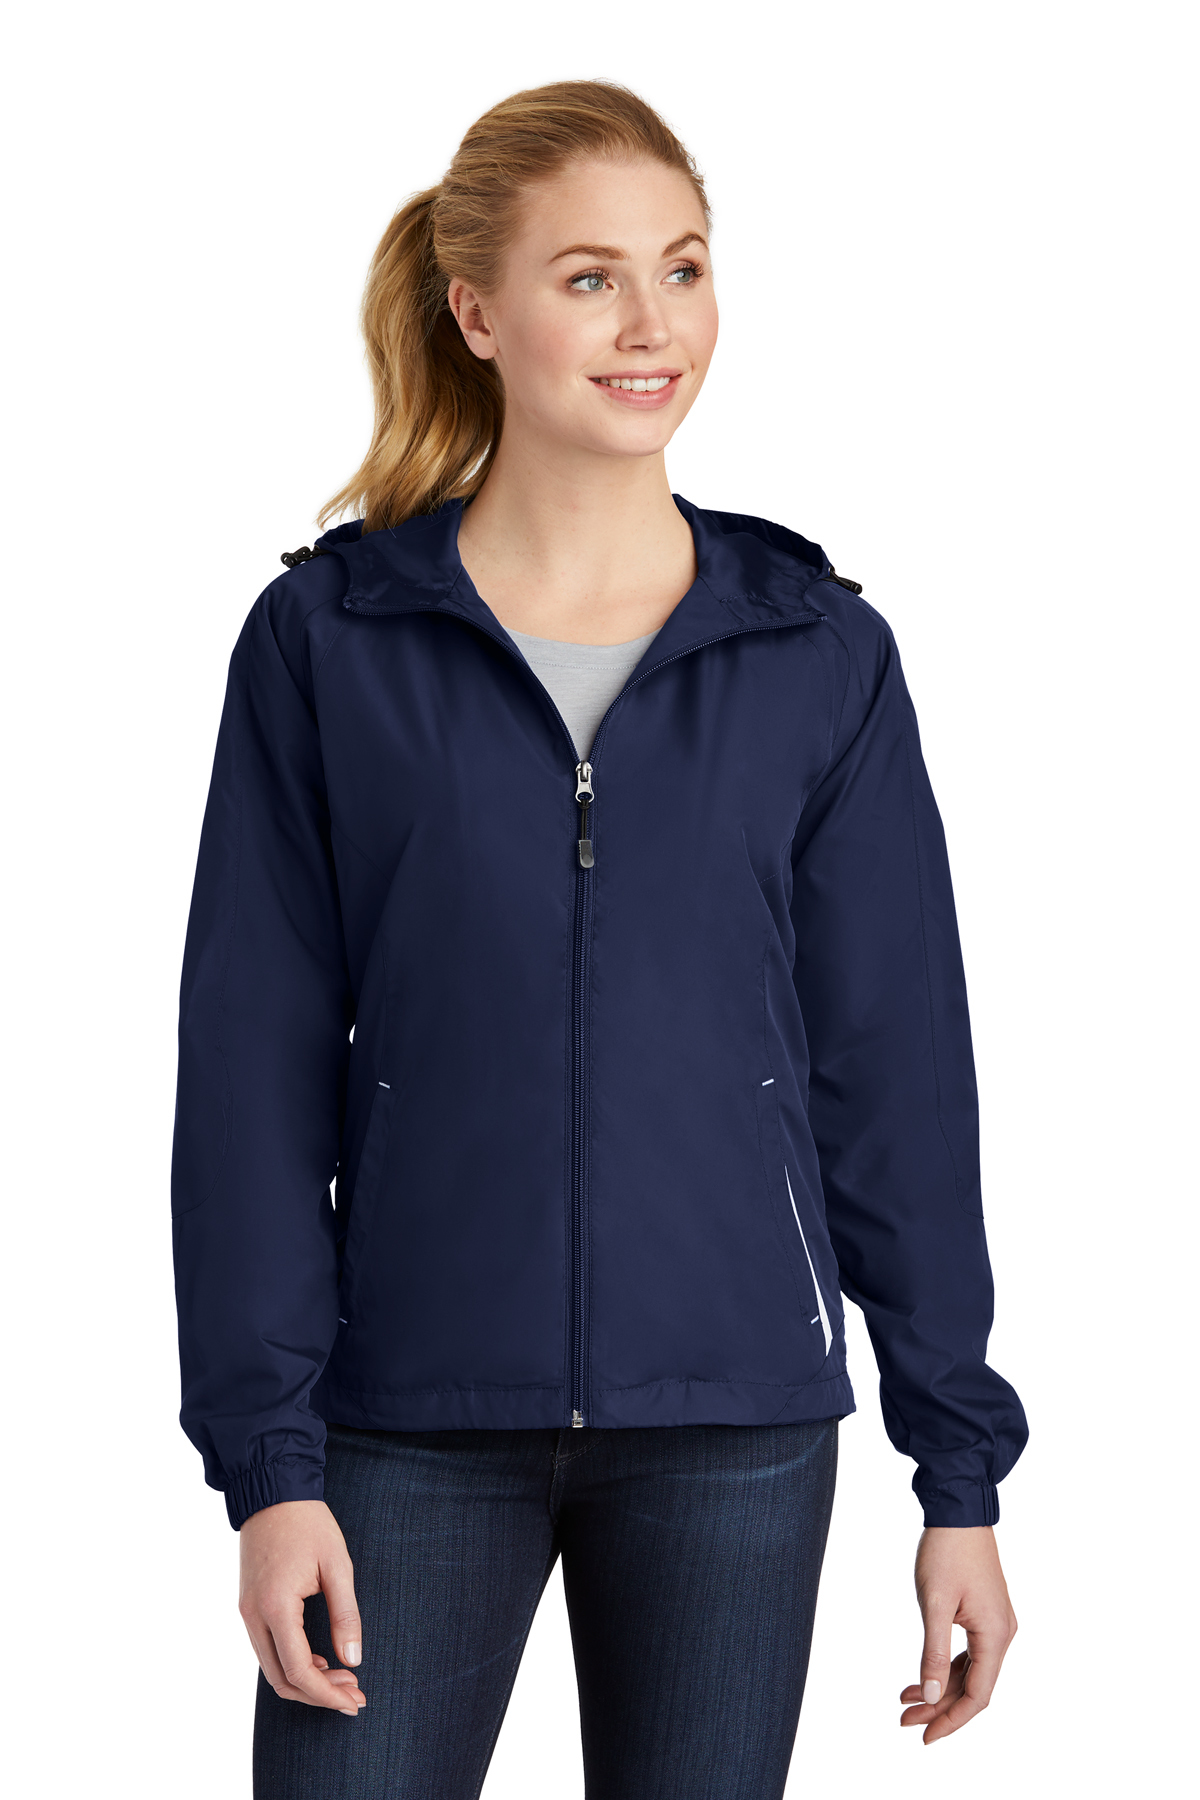 Sport-Tek Ladies Colorblock Hooded Raglan Jacket | Product | Sport-Tek